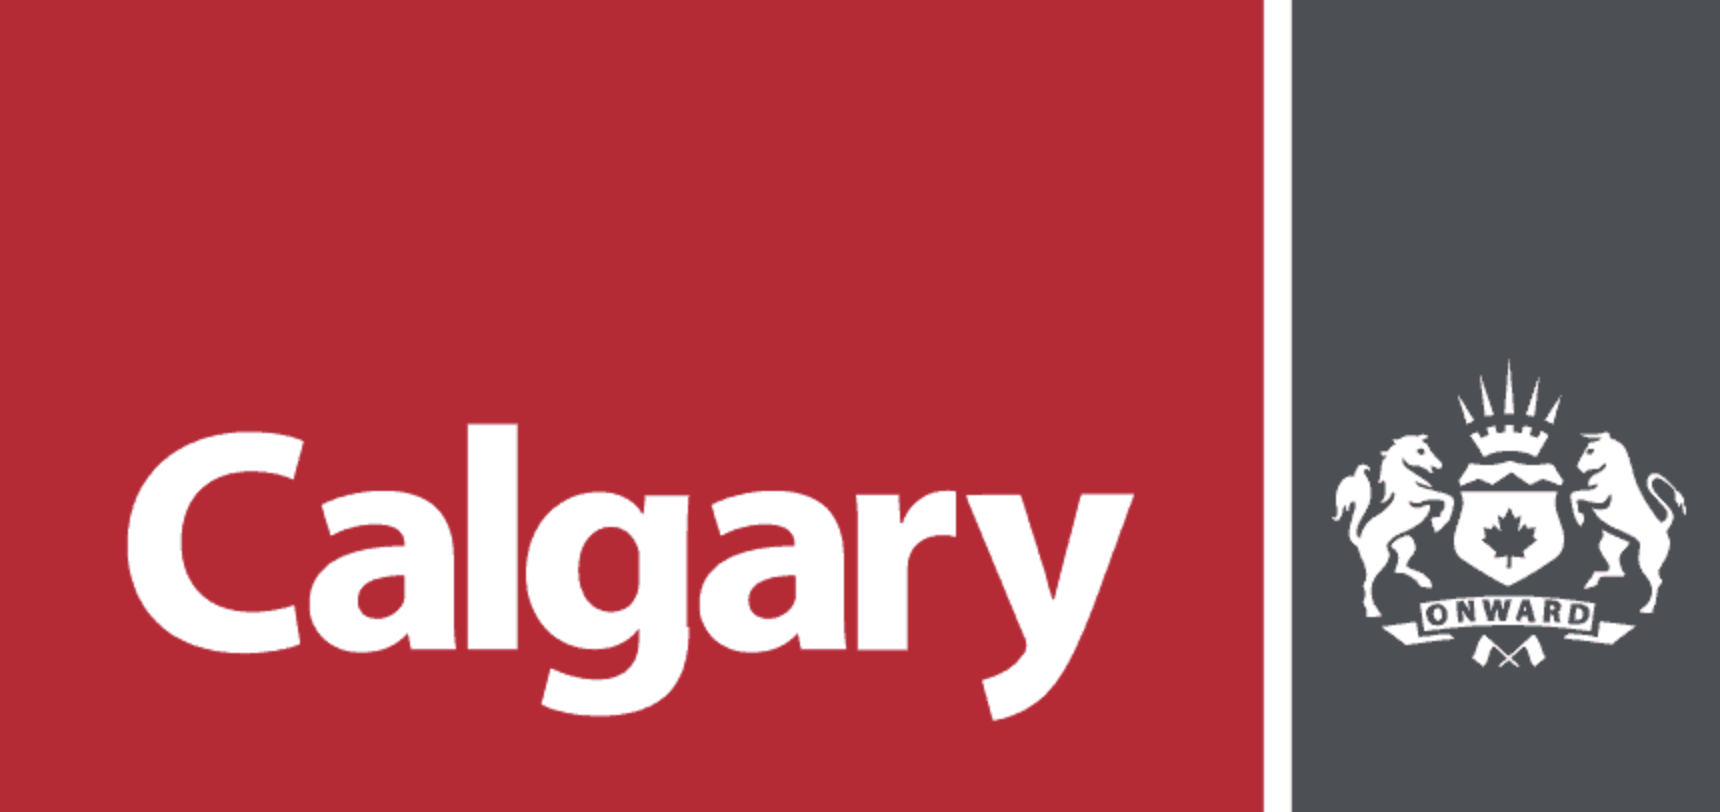 City-Of-Calgary-Logo